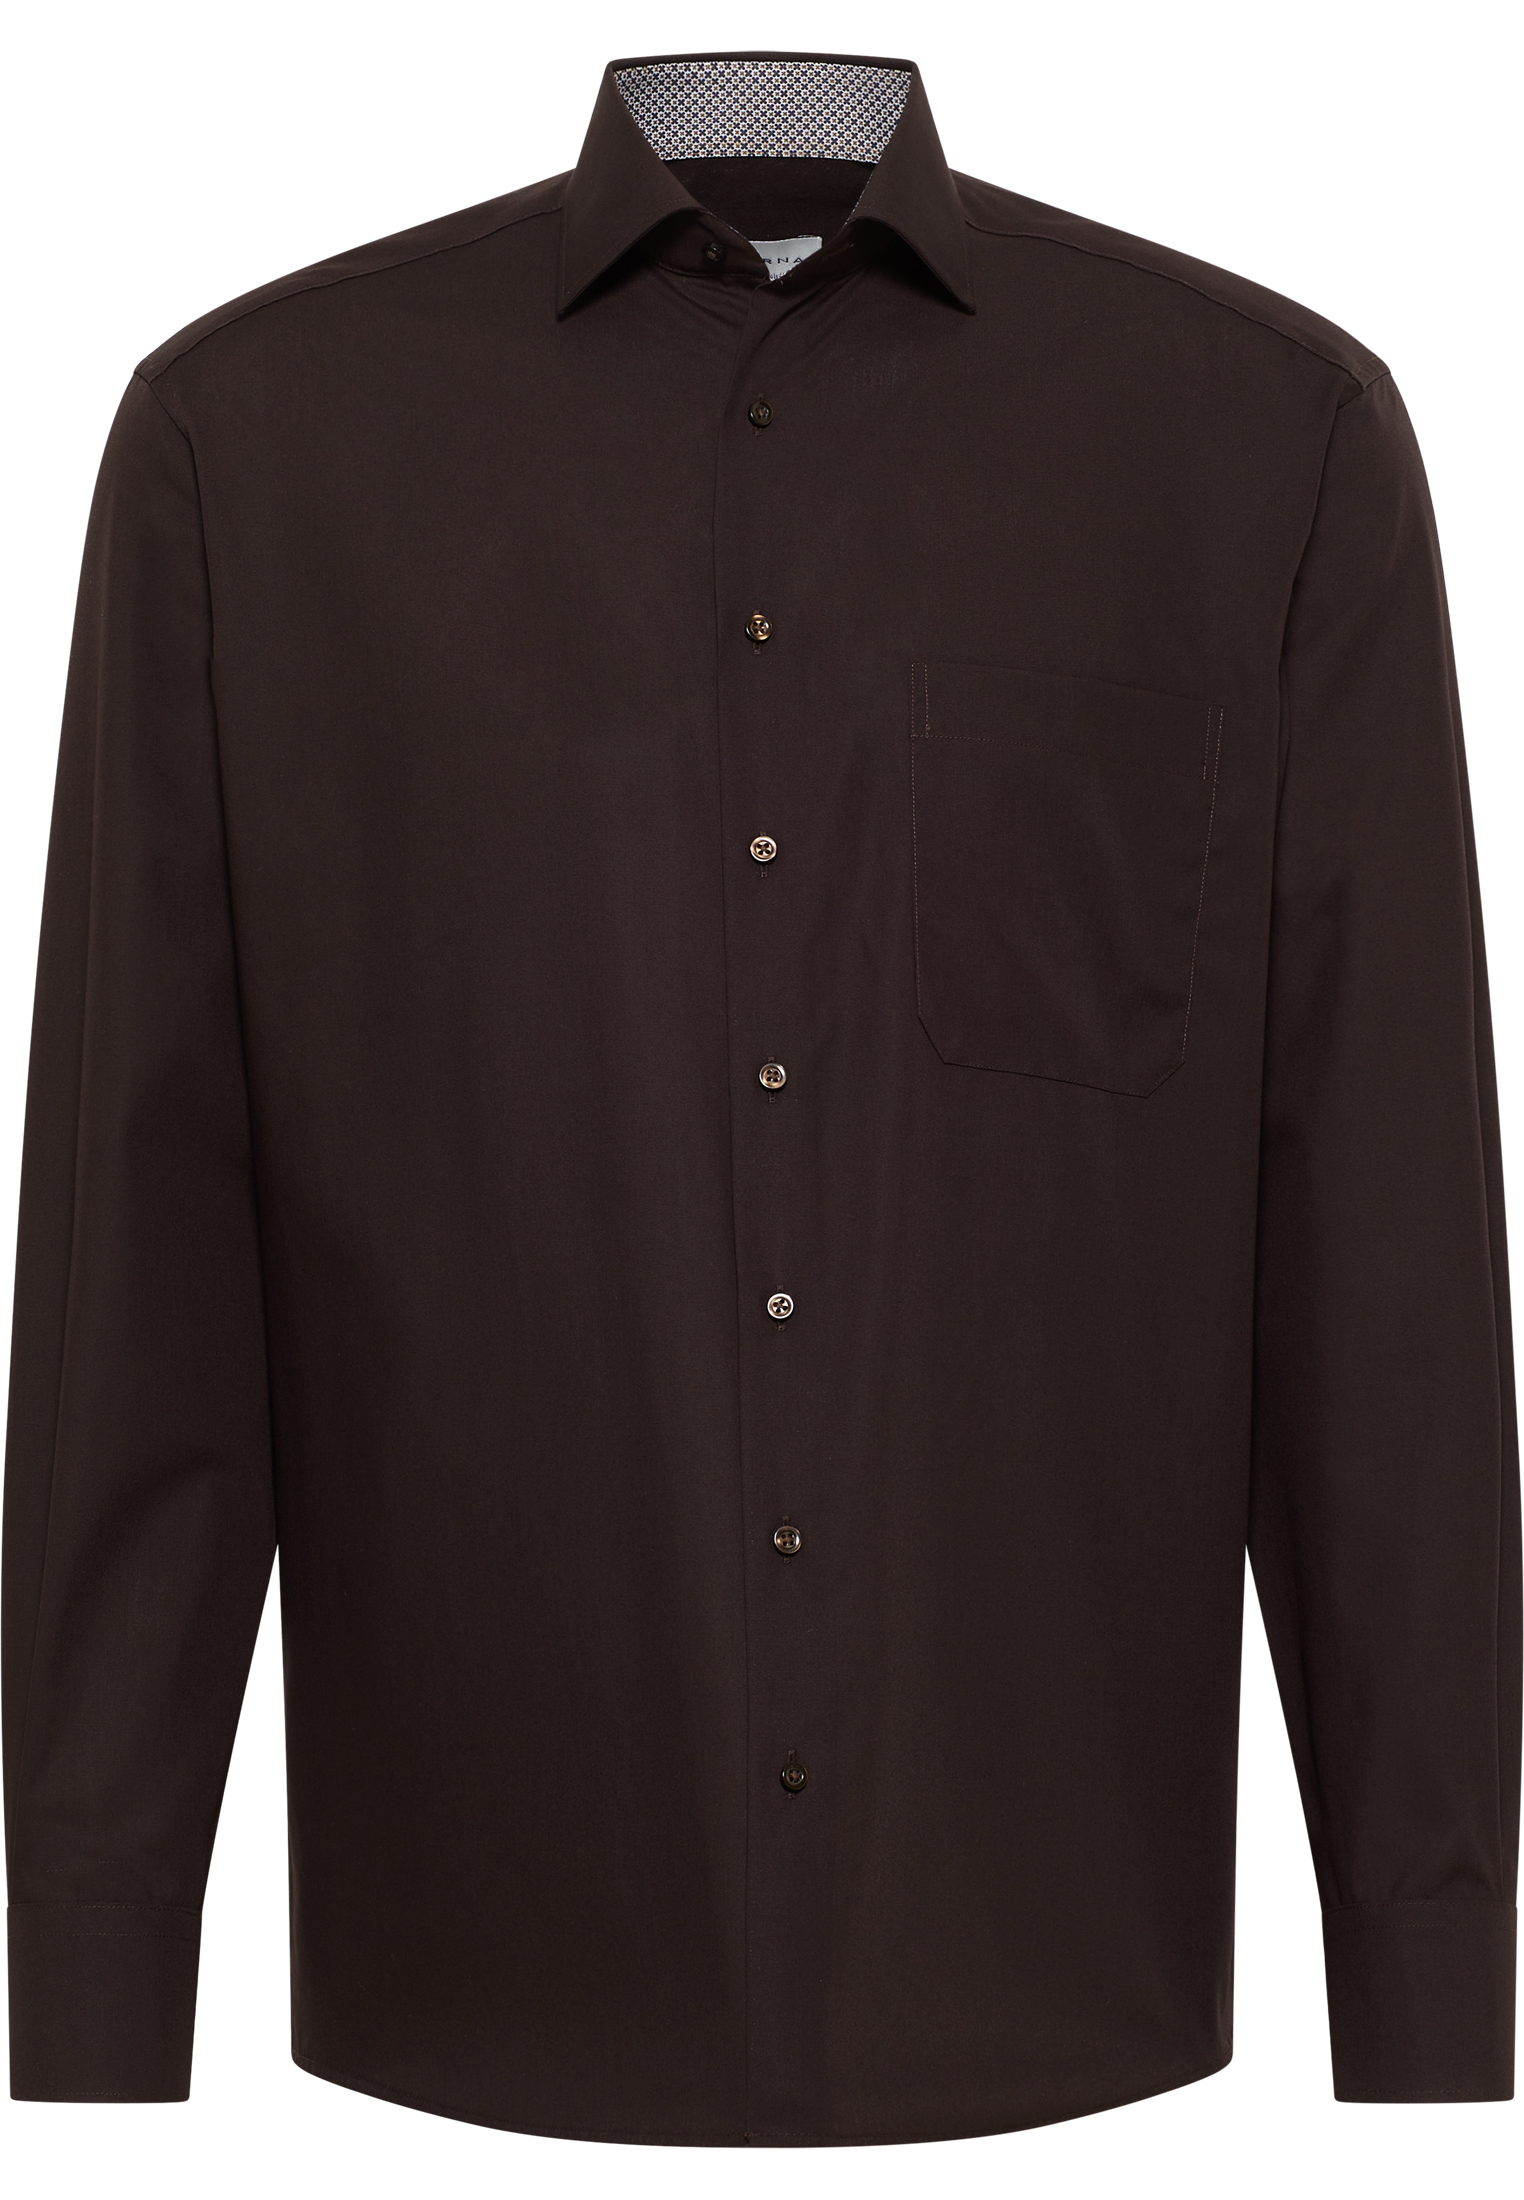 COMFORT FIT Original Shirt in dark brown plain